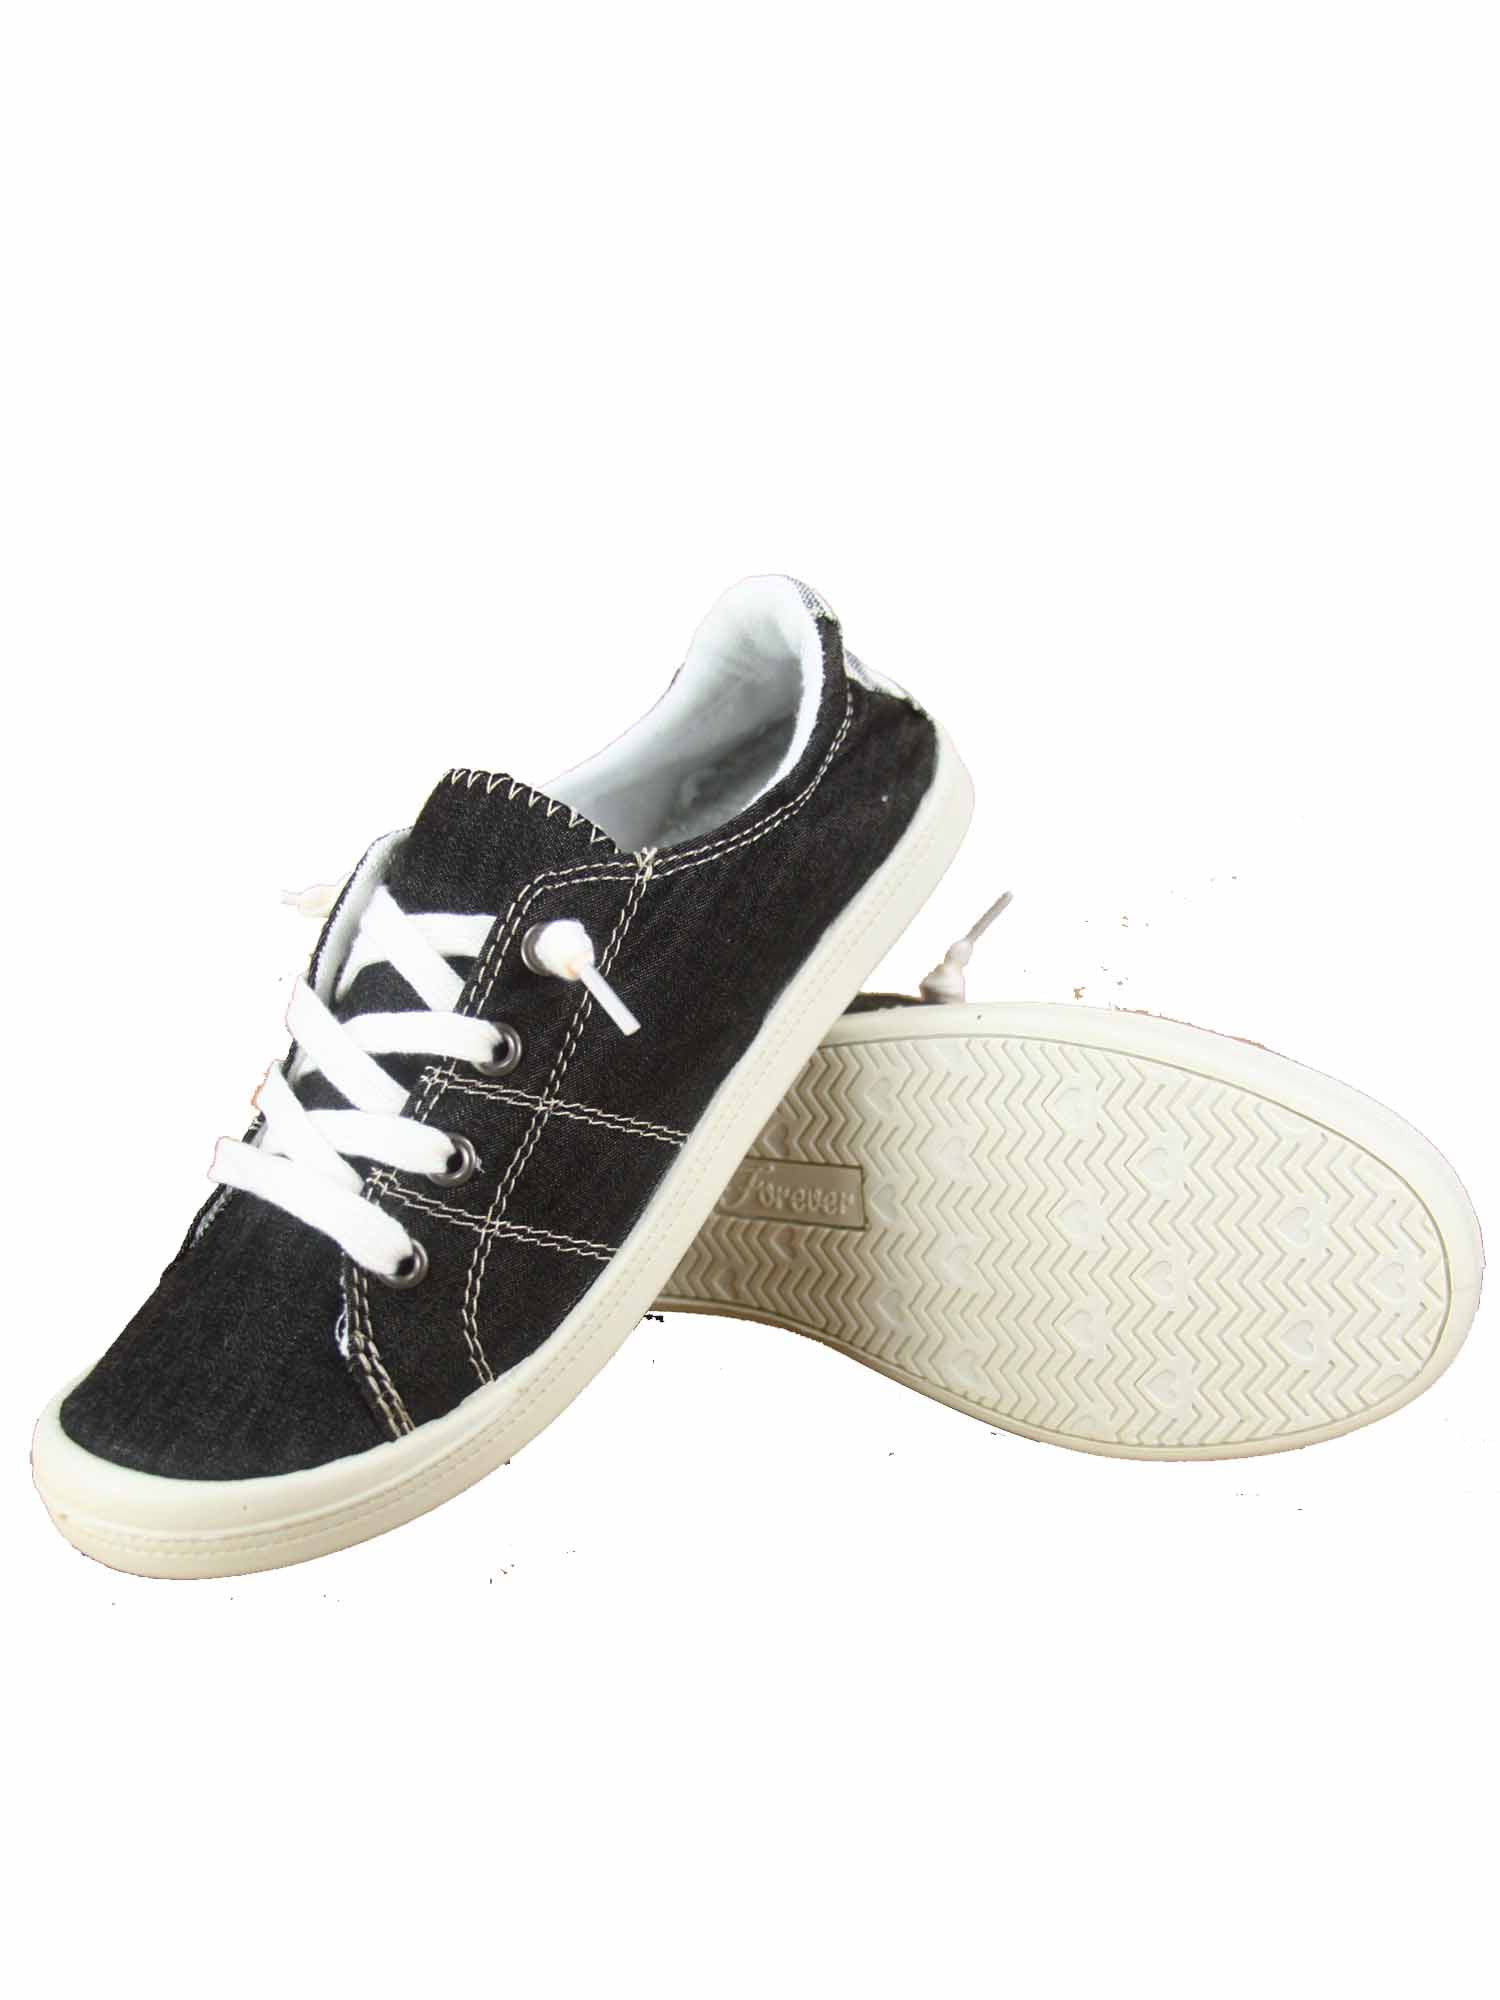 comfortable black slip on sneakers